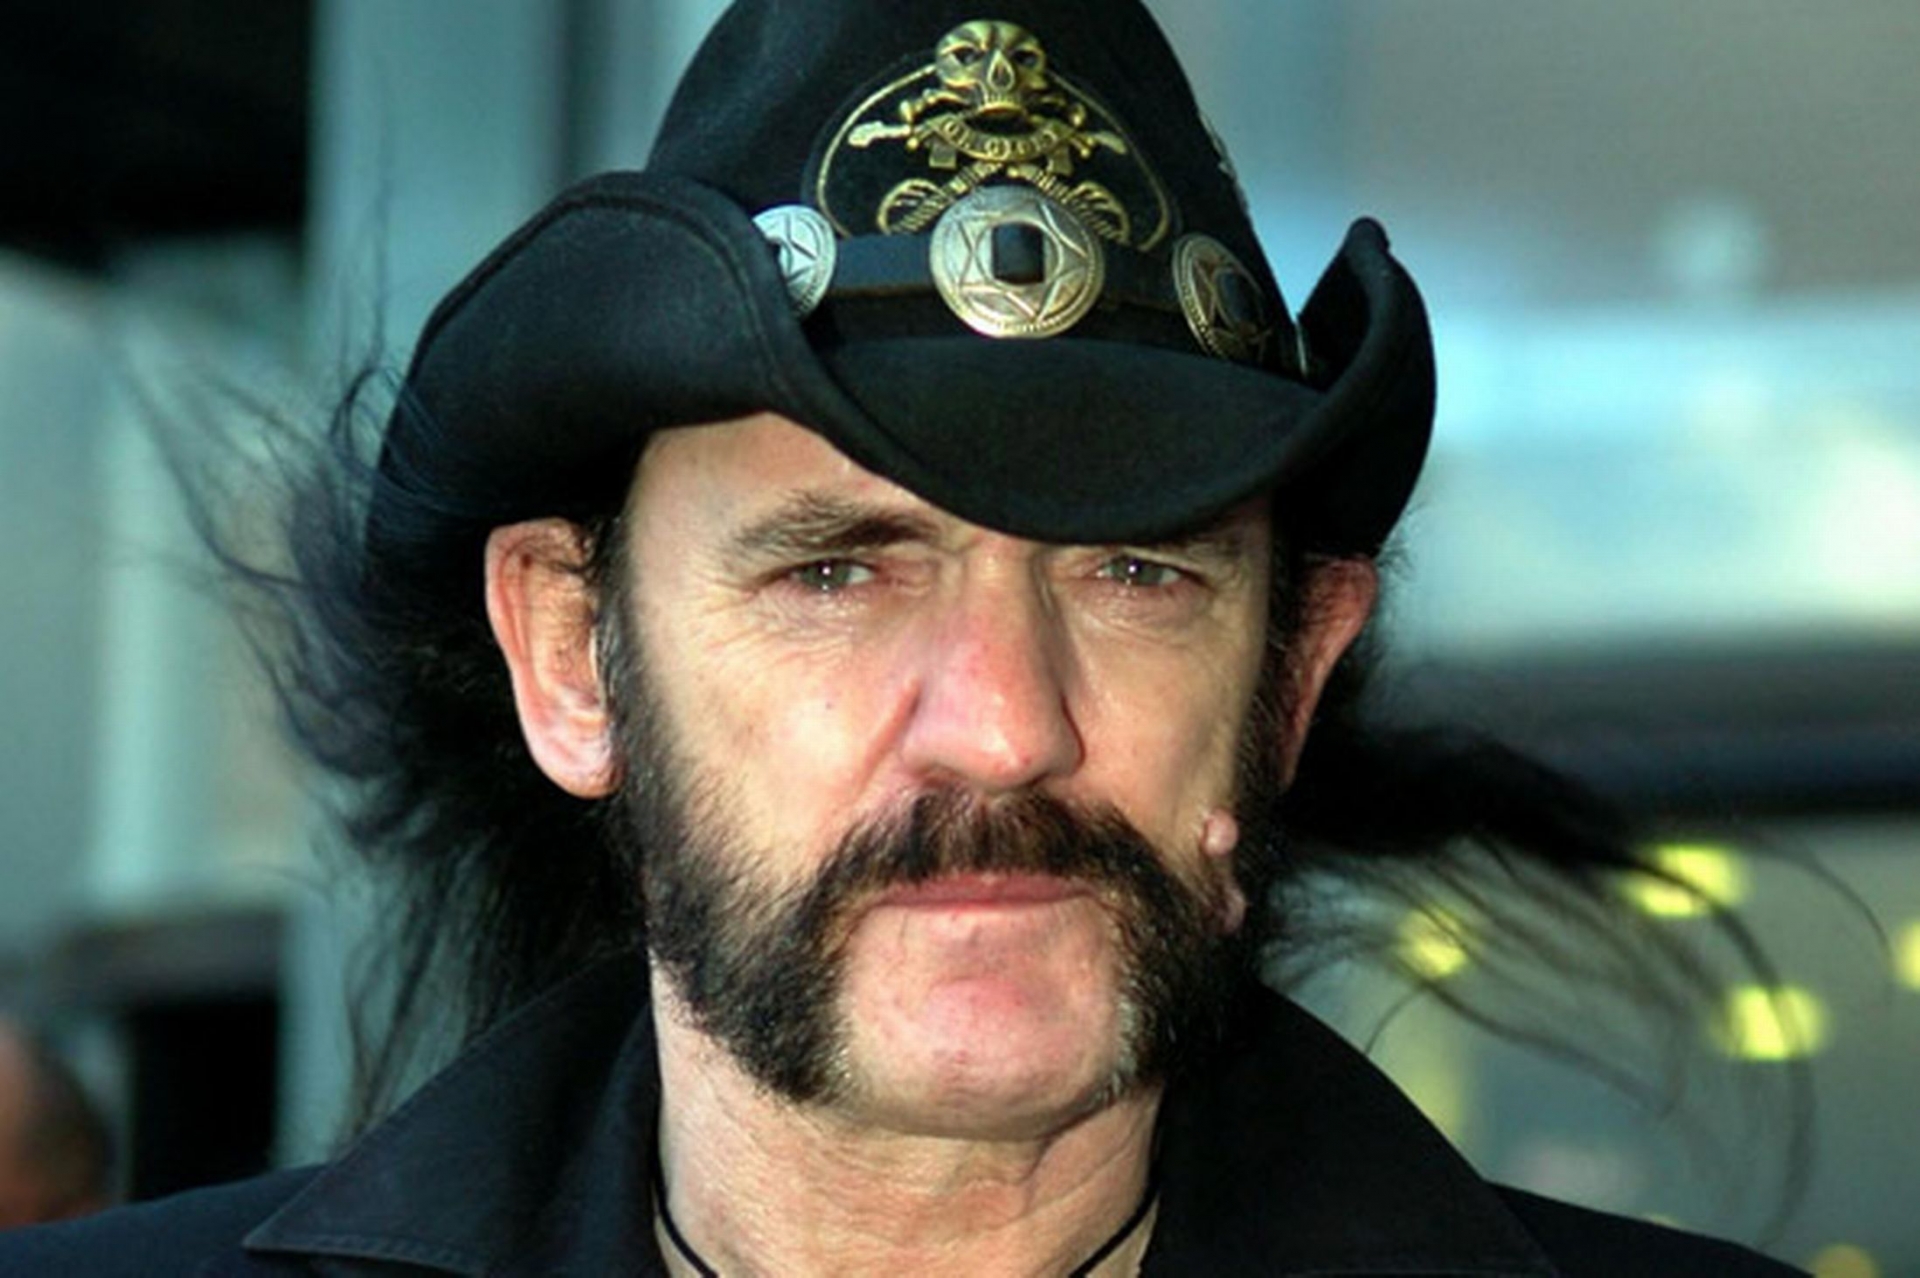 Gyász: Elhunyt a Motörhead frontembereként ismert Lemmy